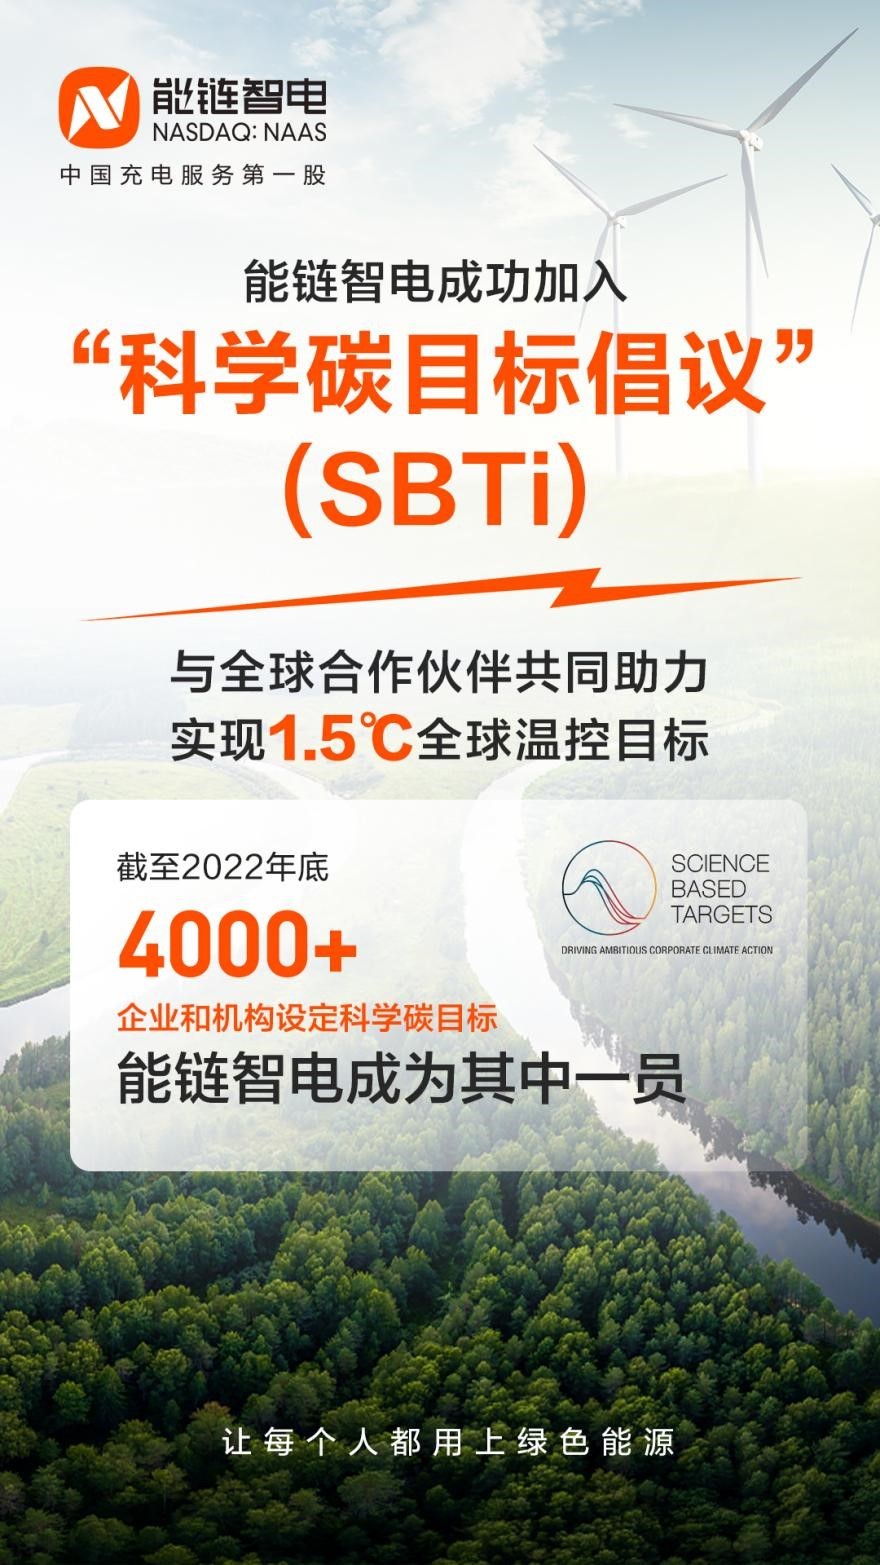 能链智电加入“科学碳目标倡议”SBTi助力实现1.5℃全球温控目标